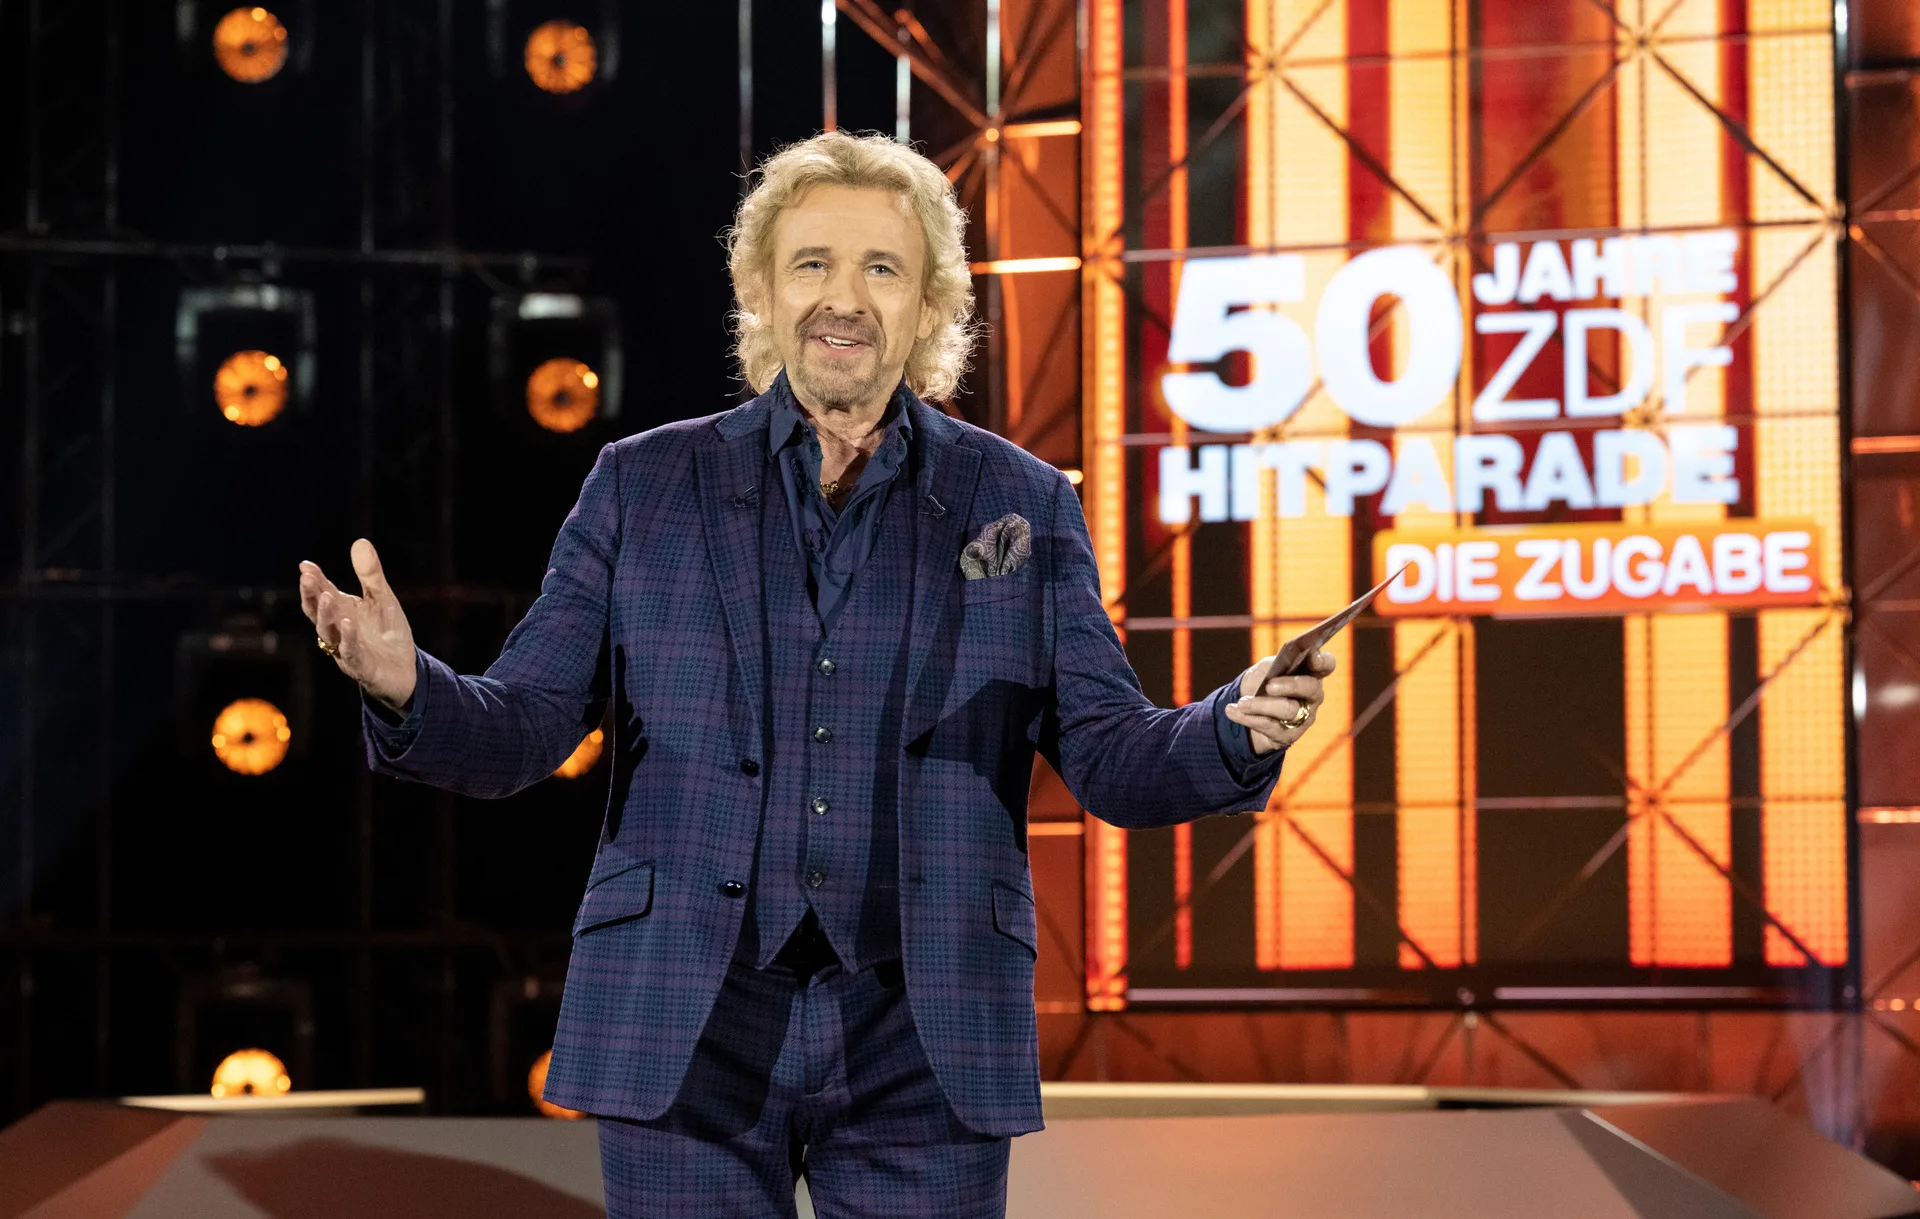 50 Jahre ZDF-Hitparade mit Thomas Gottschalk am 10.07. im TV